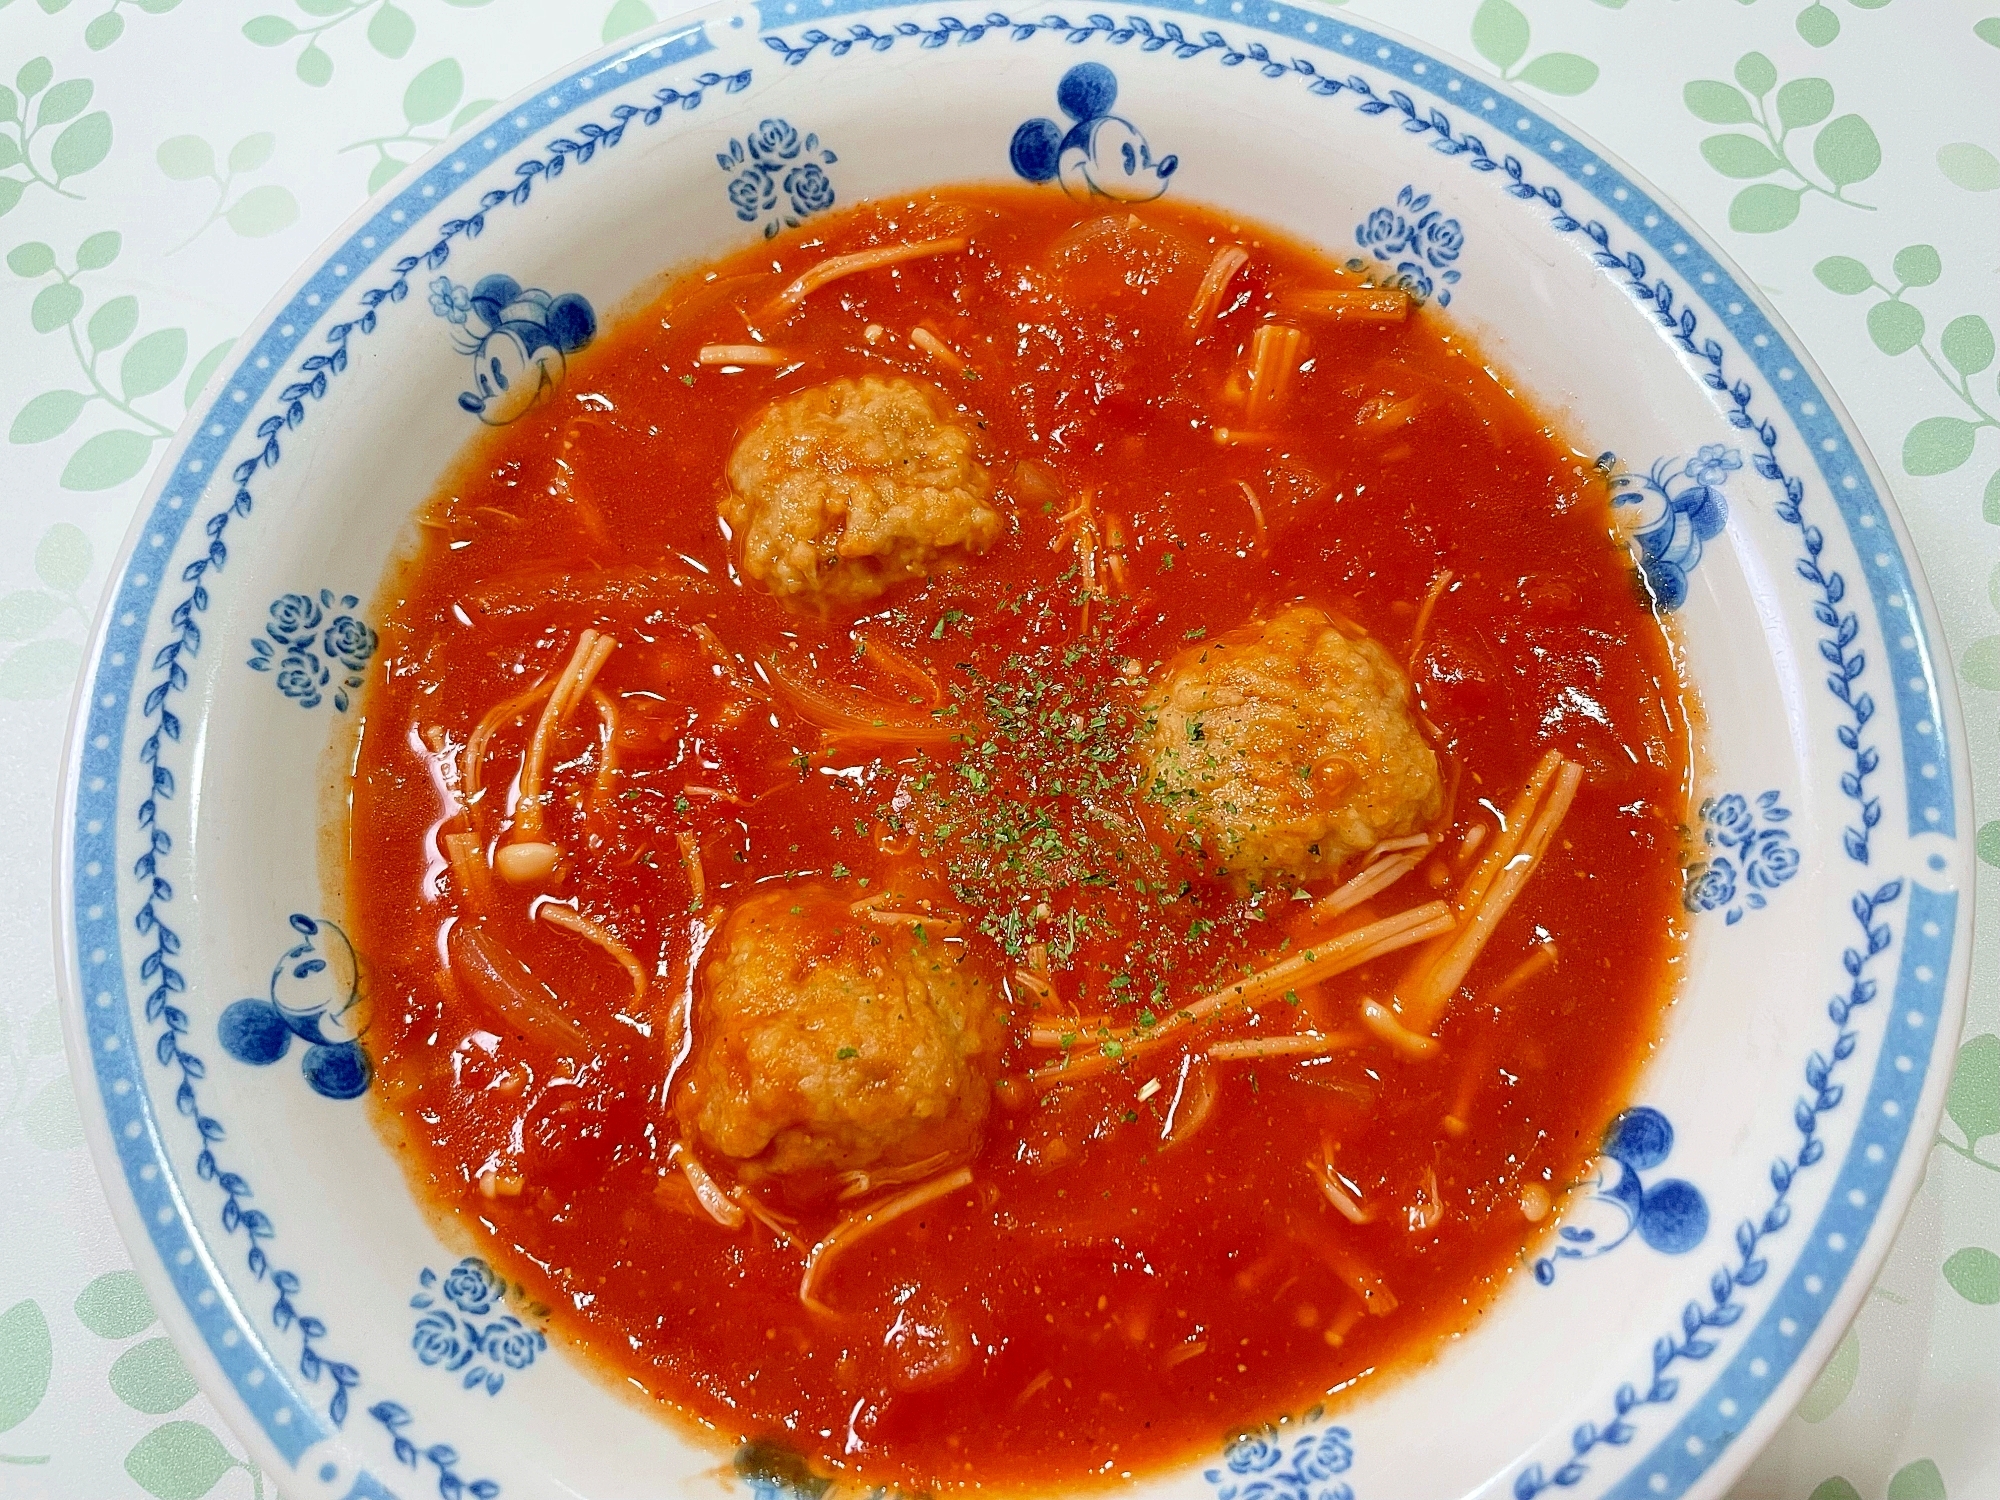 ミートボールのトマト味噌スープ